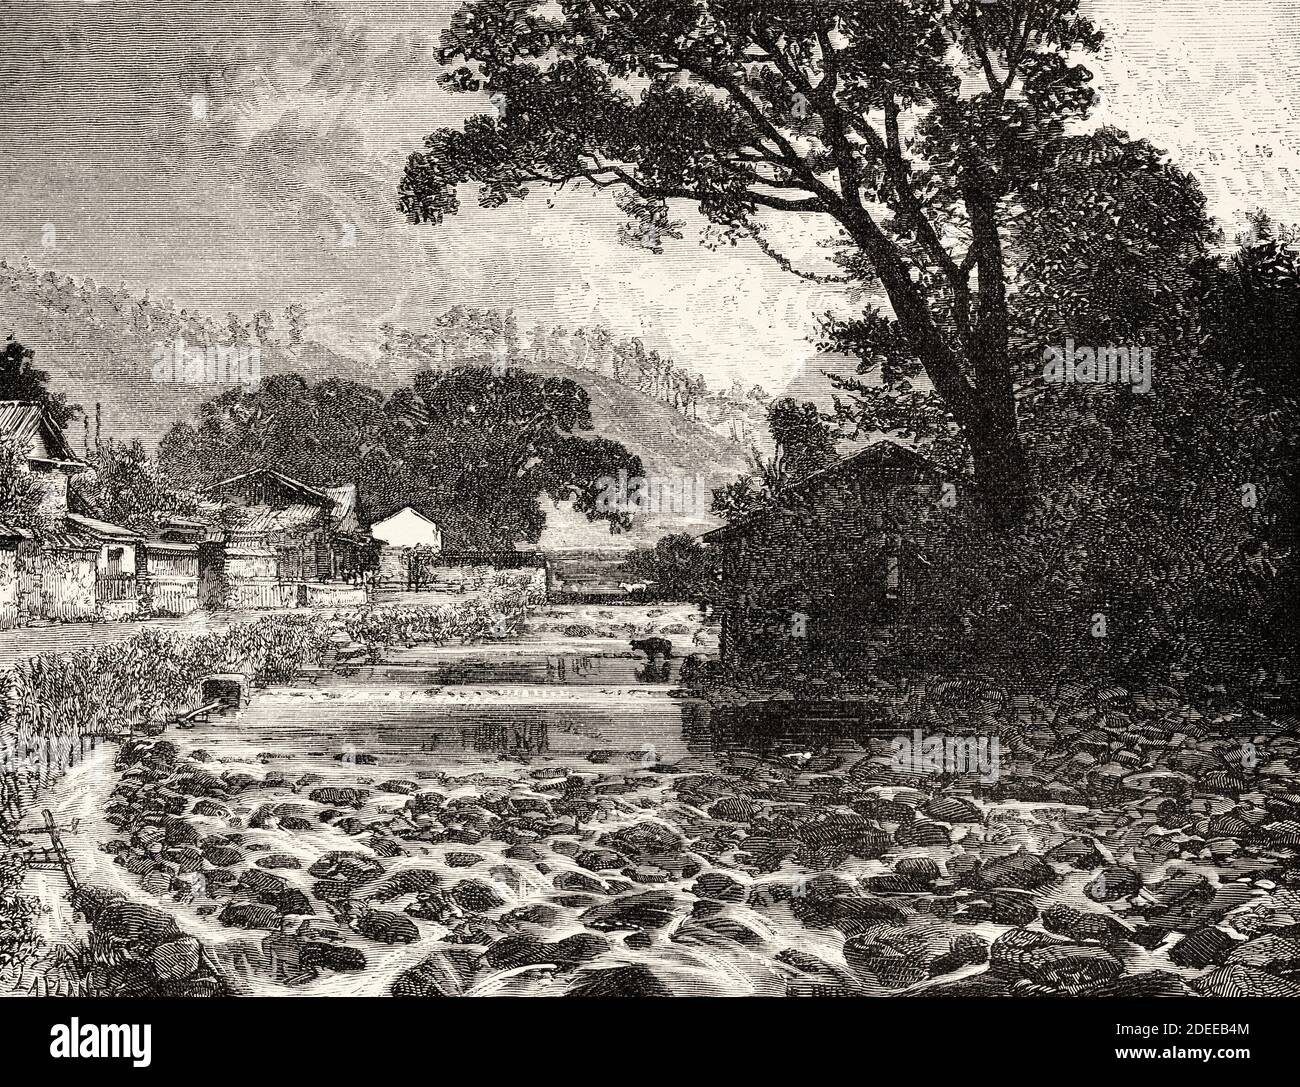 Flusslandschaft auf Kyushu, Japan. Alte Illustration aus dem 19. Jahrhundert Reise nach Japan von Aime Humbert aus El Mundo en La Mano 1879 Stockfoto